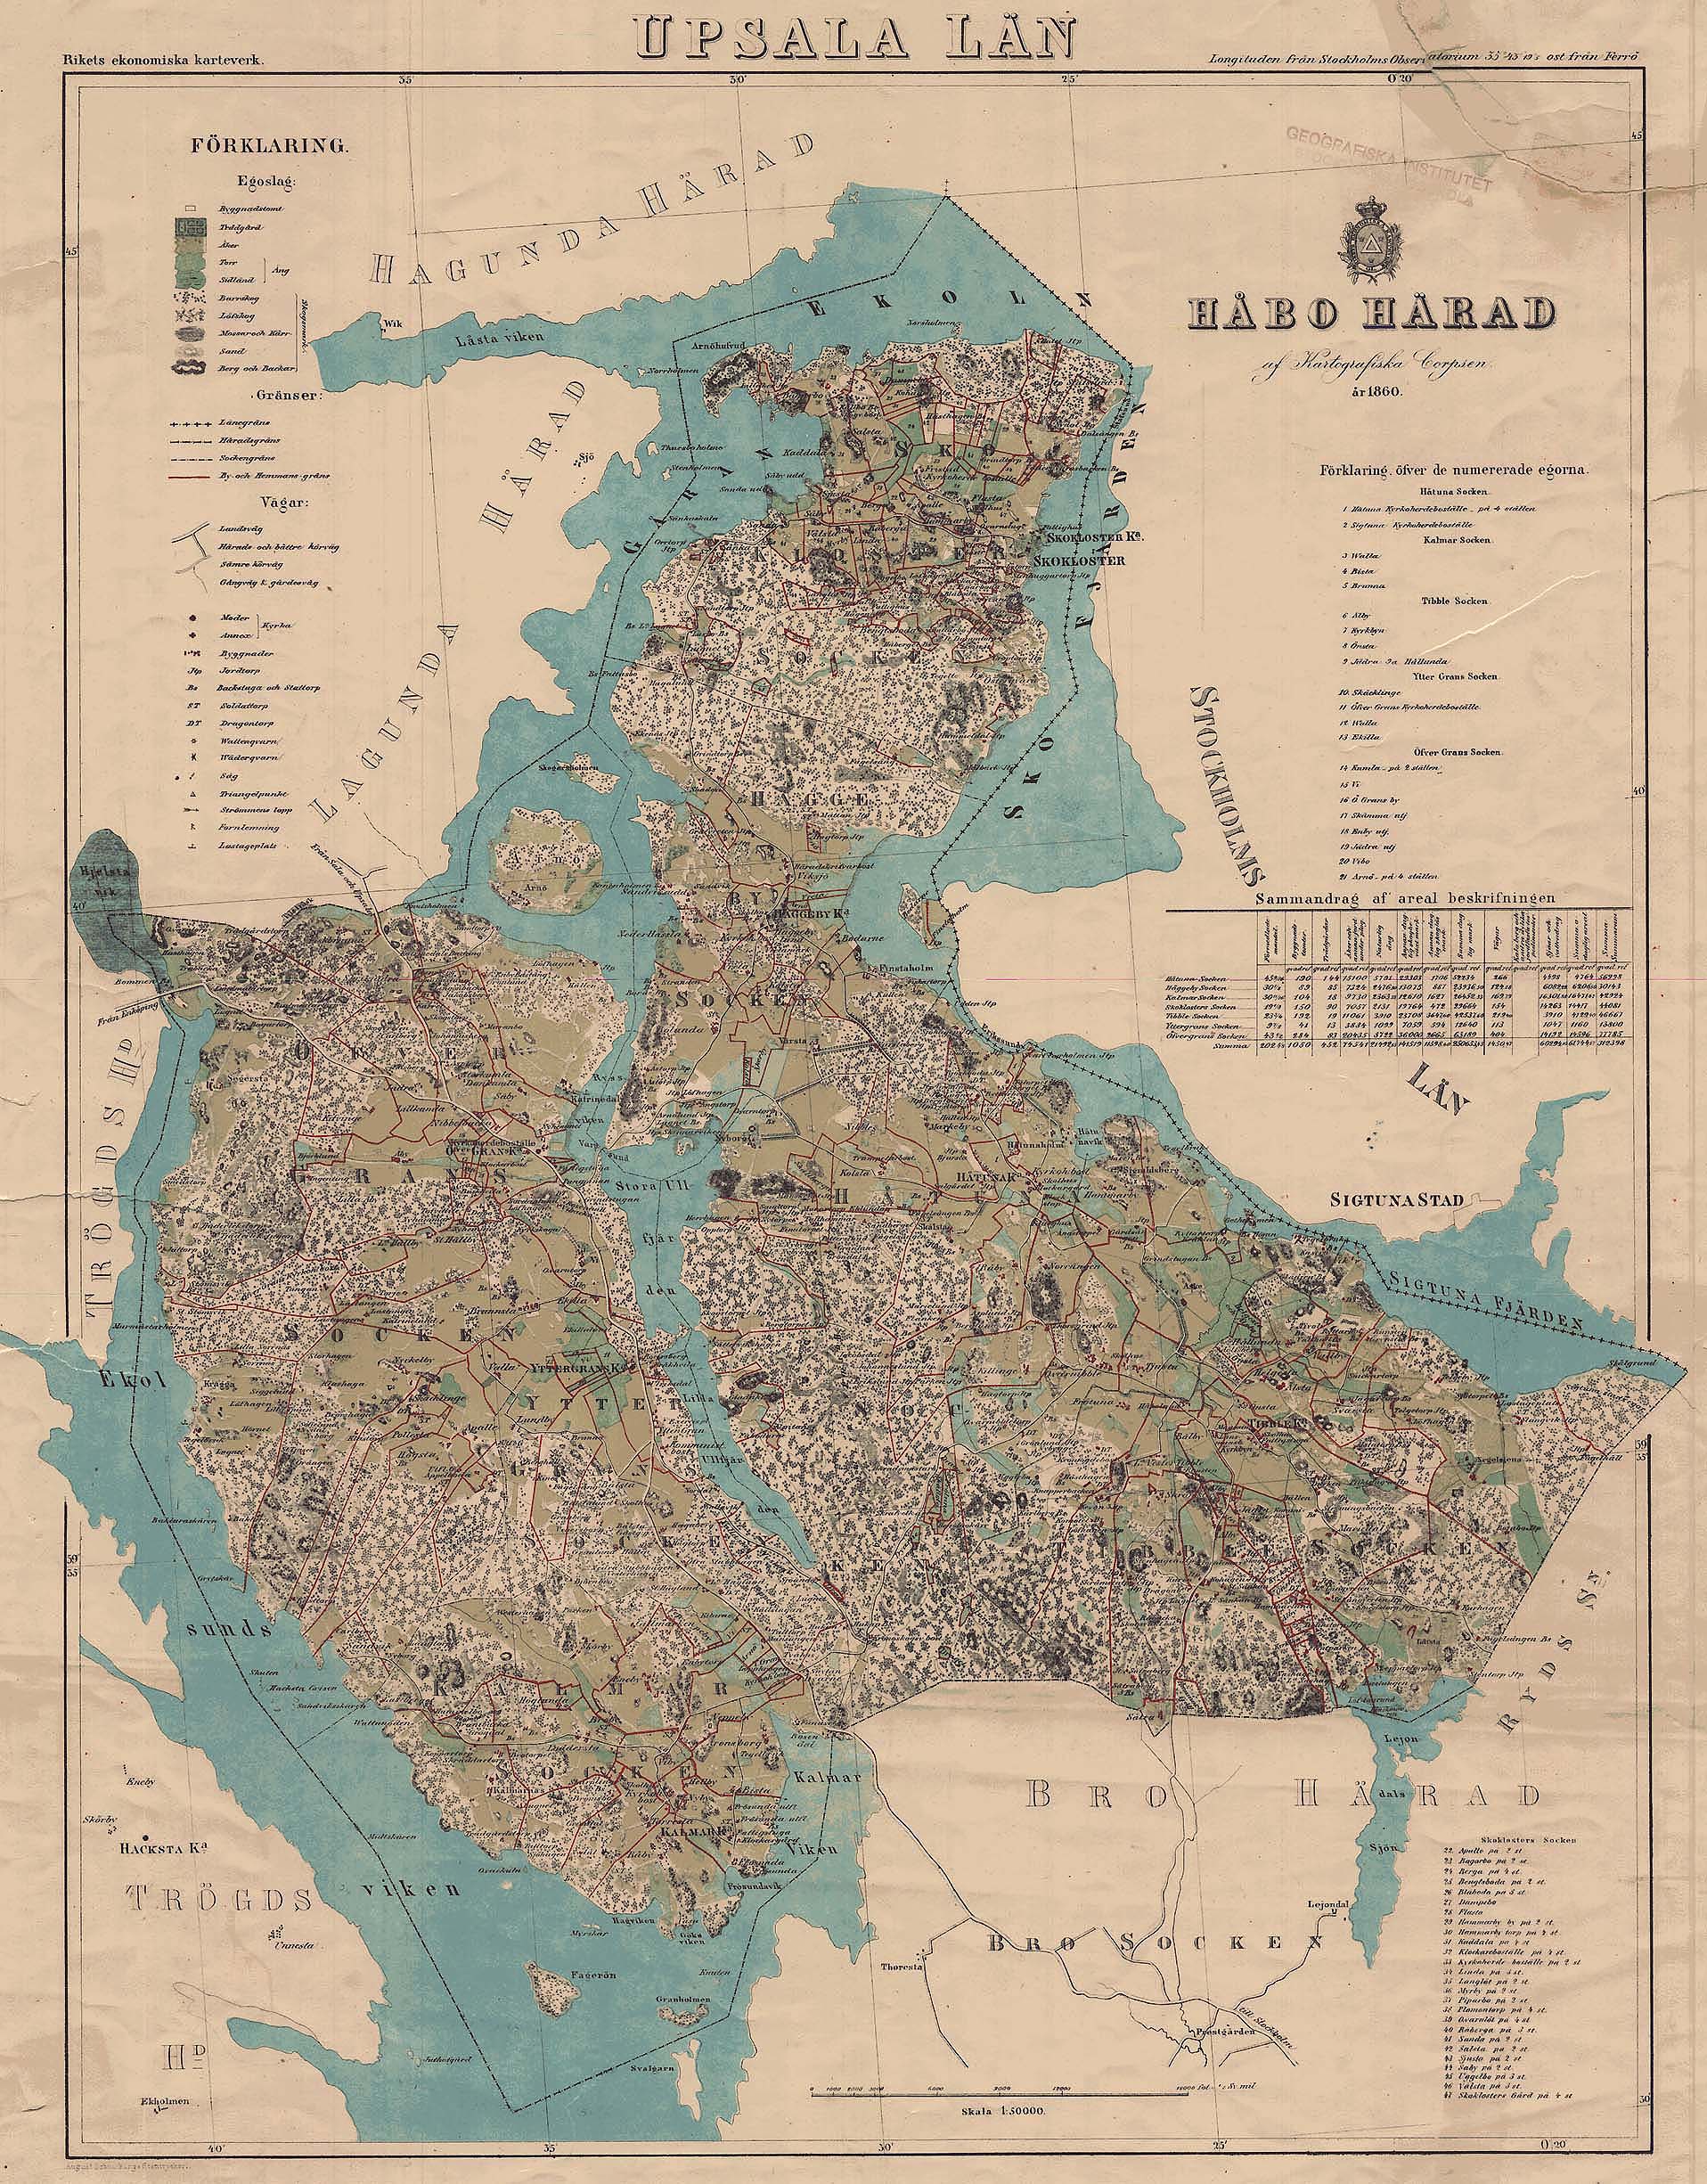 håbo_härad_1860_karta.jpg